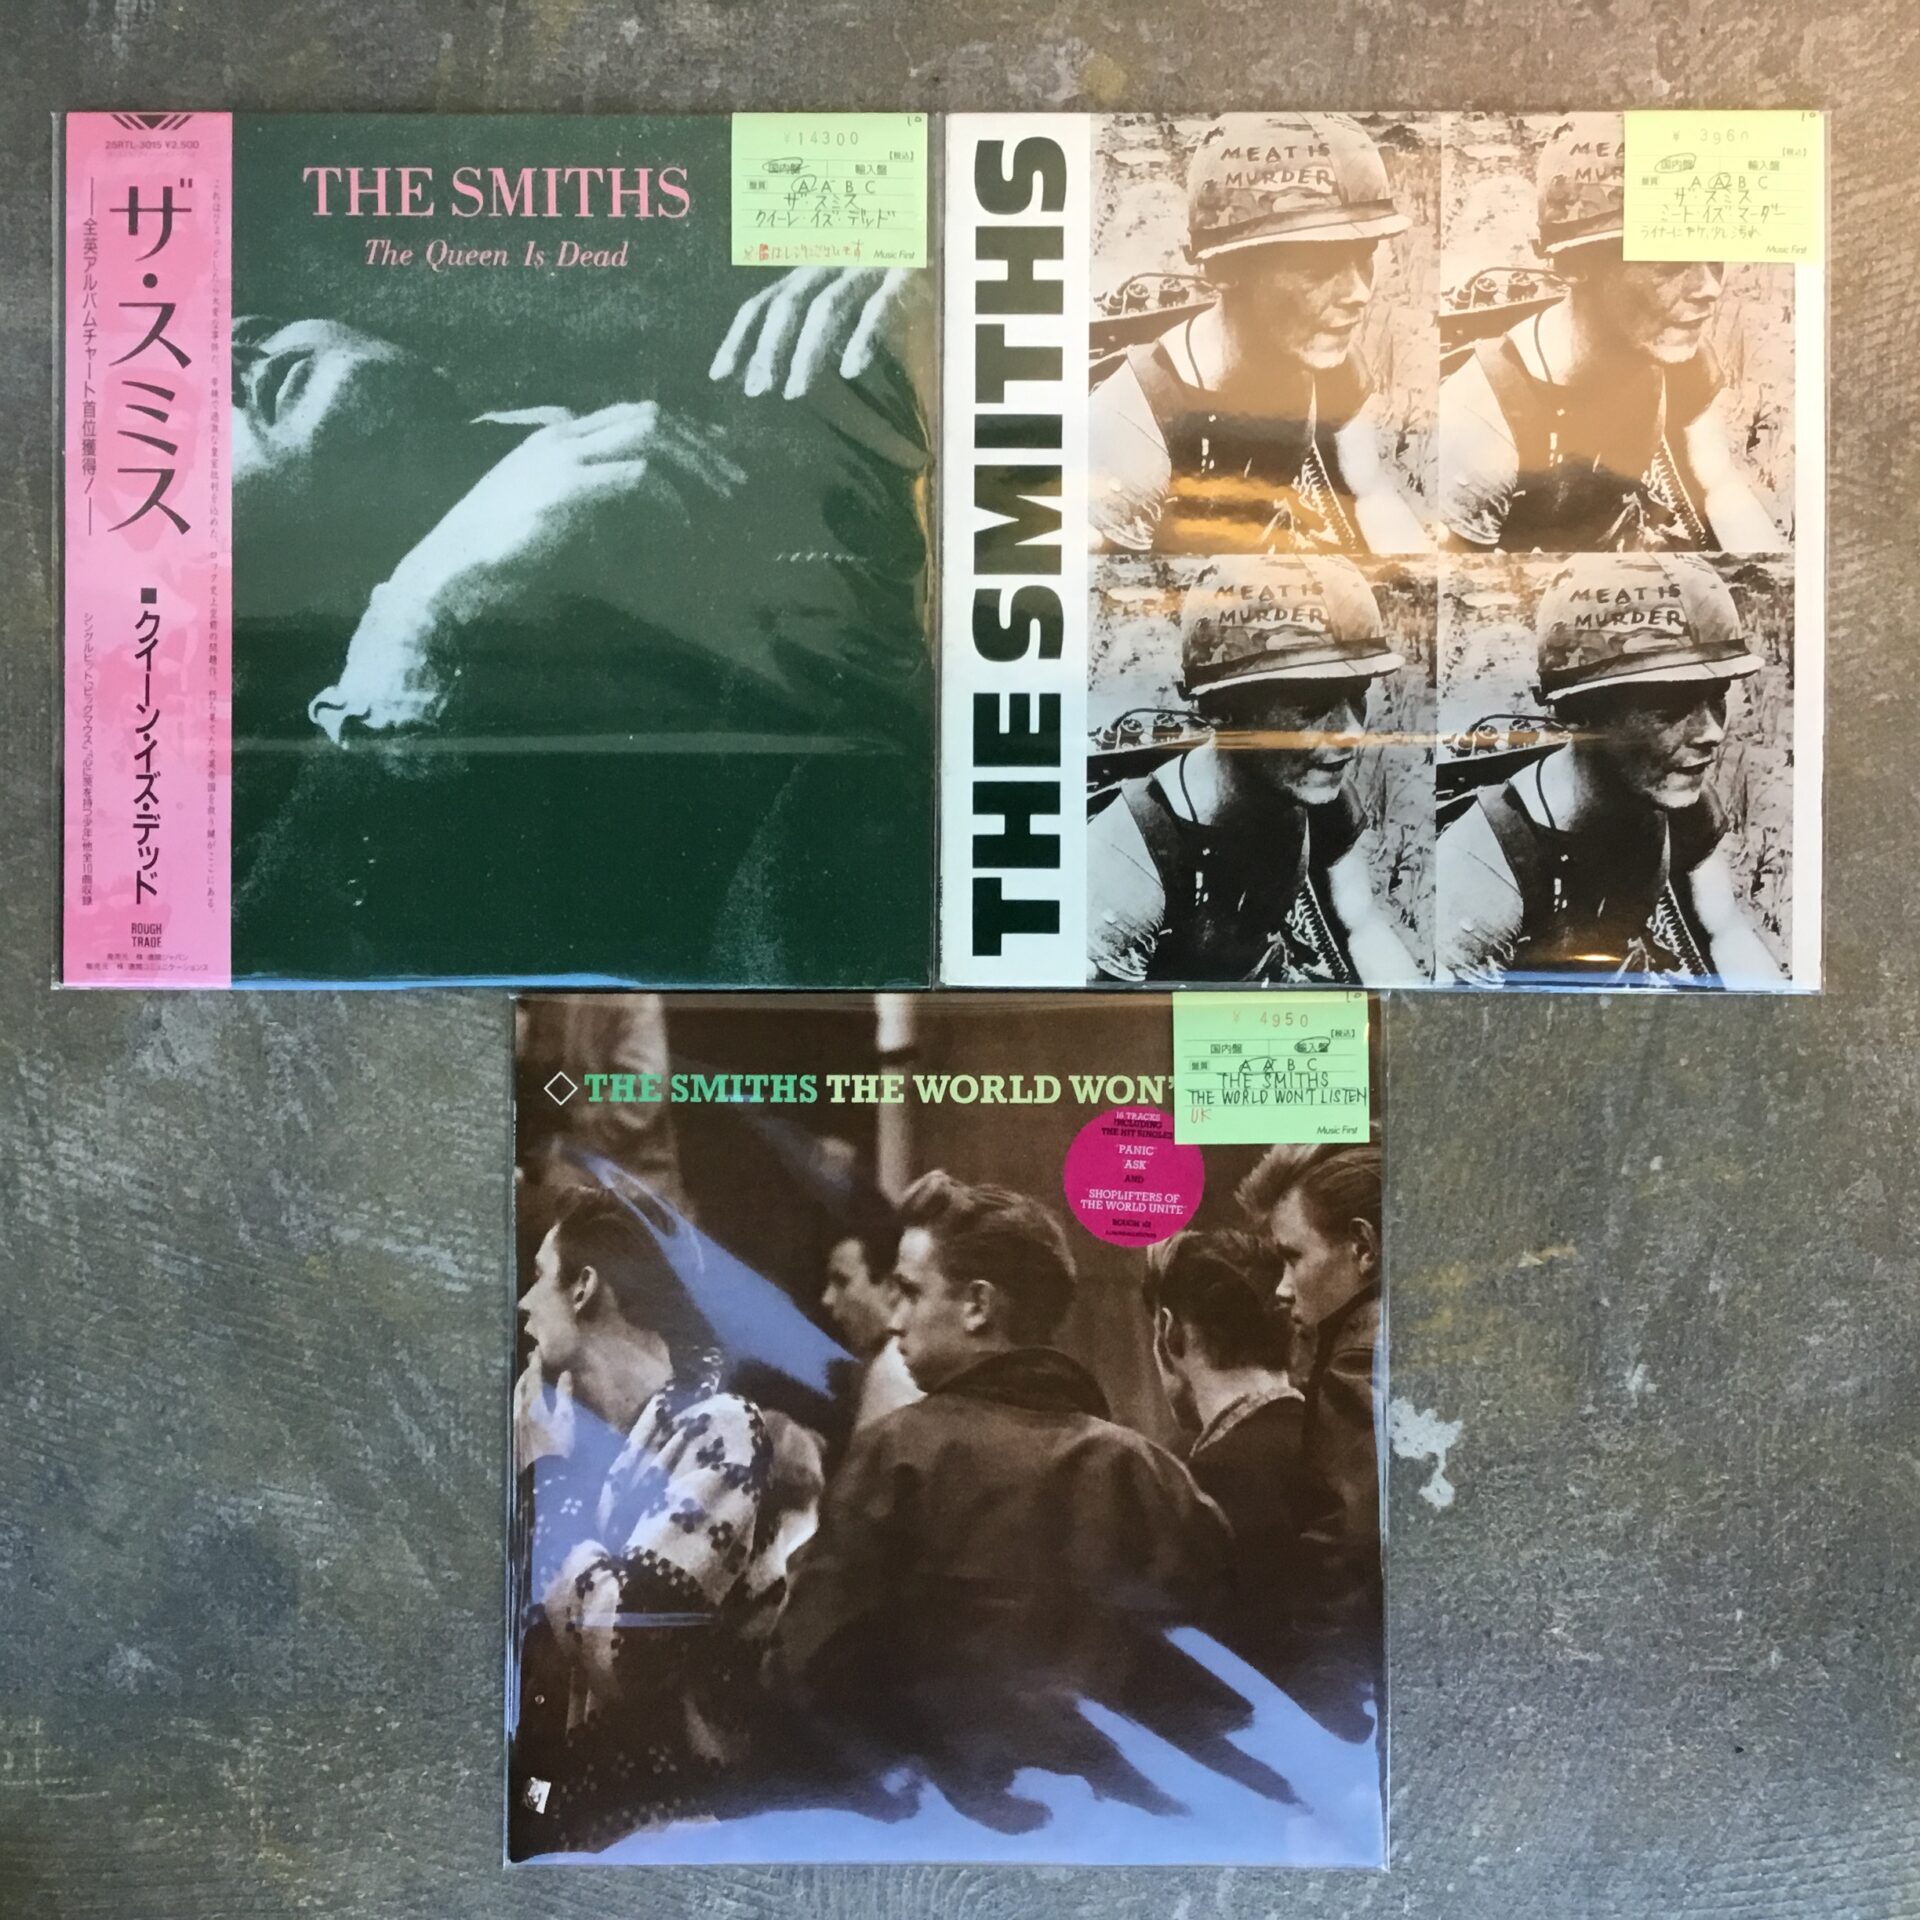 ザ・スミスの名盤アルバム2枚とコンピレーション1枚が入りました。